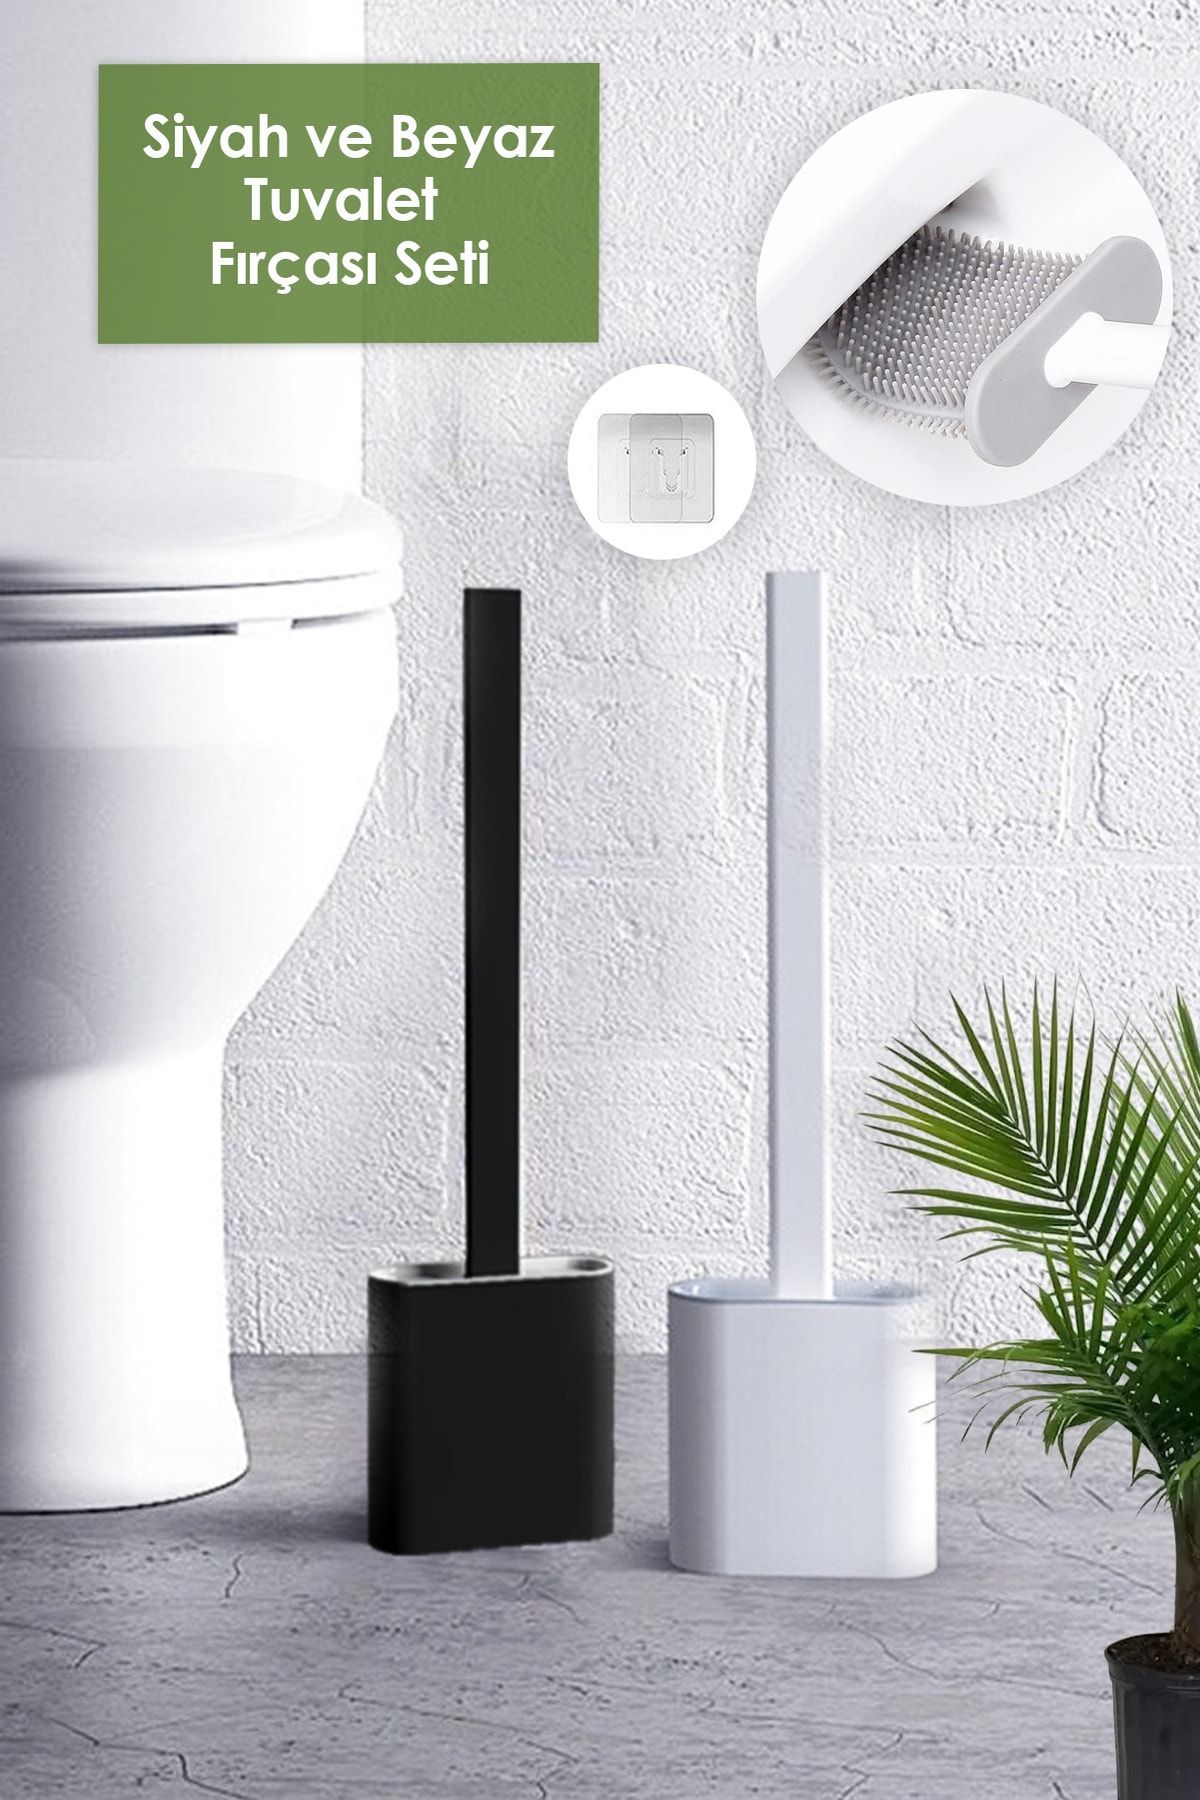 Anadolu Saray Çarşısı 2li Set Beyaz Ve Siyah Renk Silikon Tuvalet Fırçası Set Bükülebilir Pratik Silikon Wc Klozet Fırçası